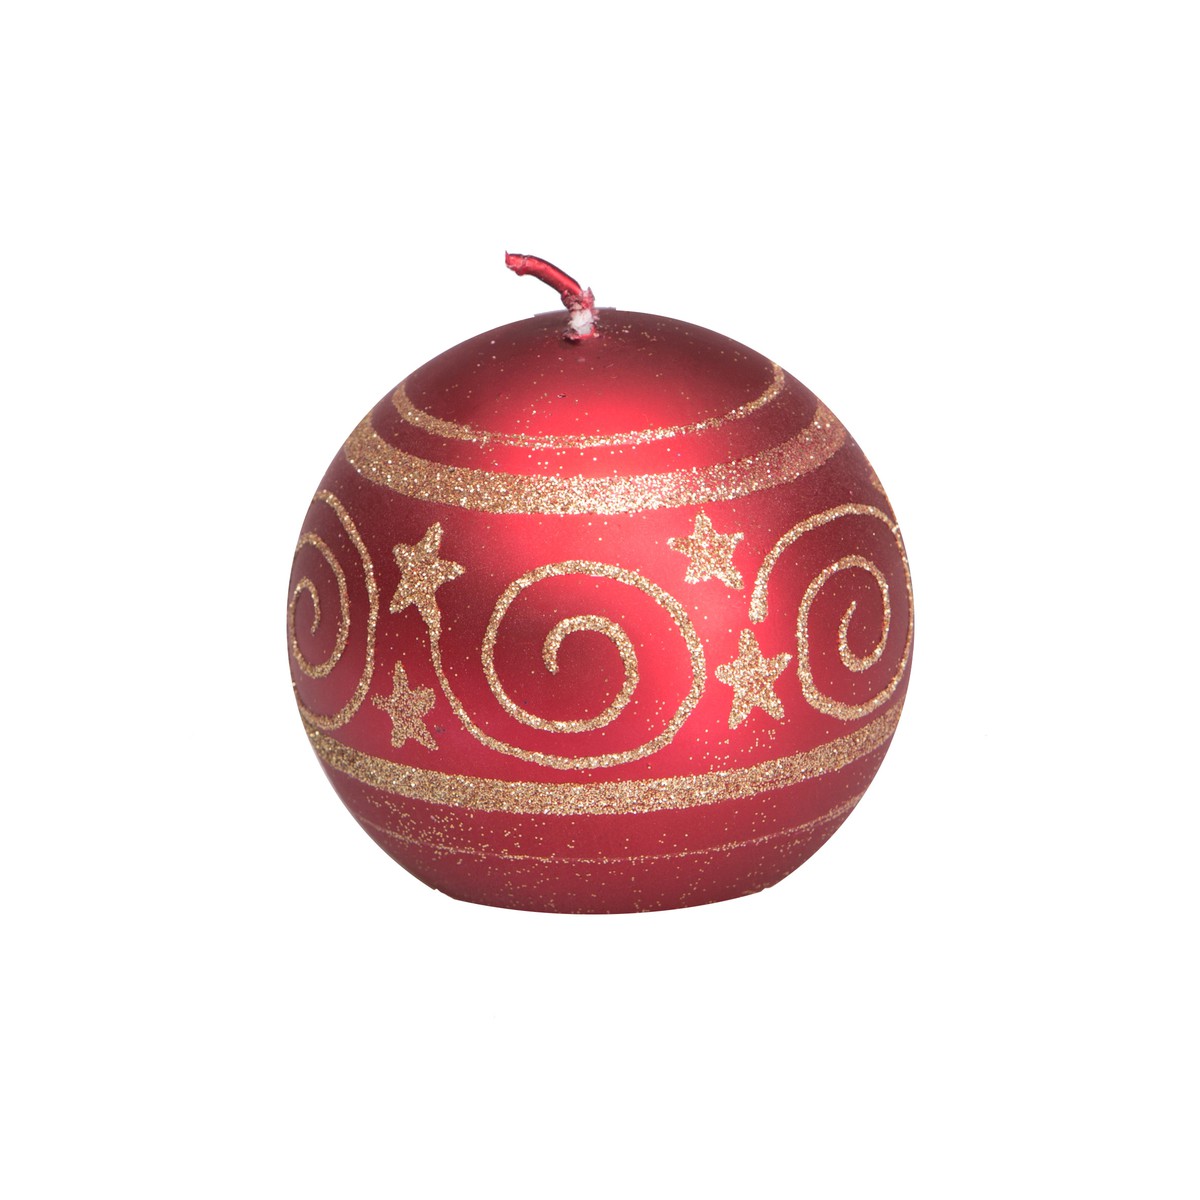   Bougie Boule de Noël Arabesque & étoiles Rouge cerise 7.3x7.3x7.2cm